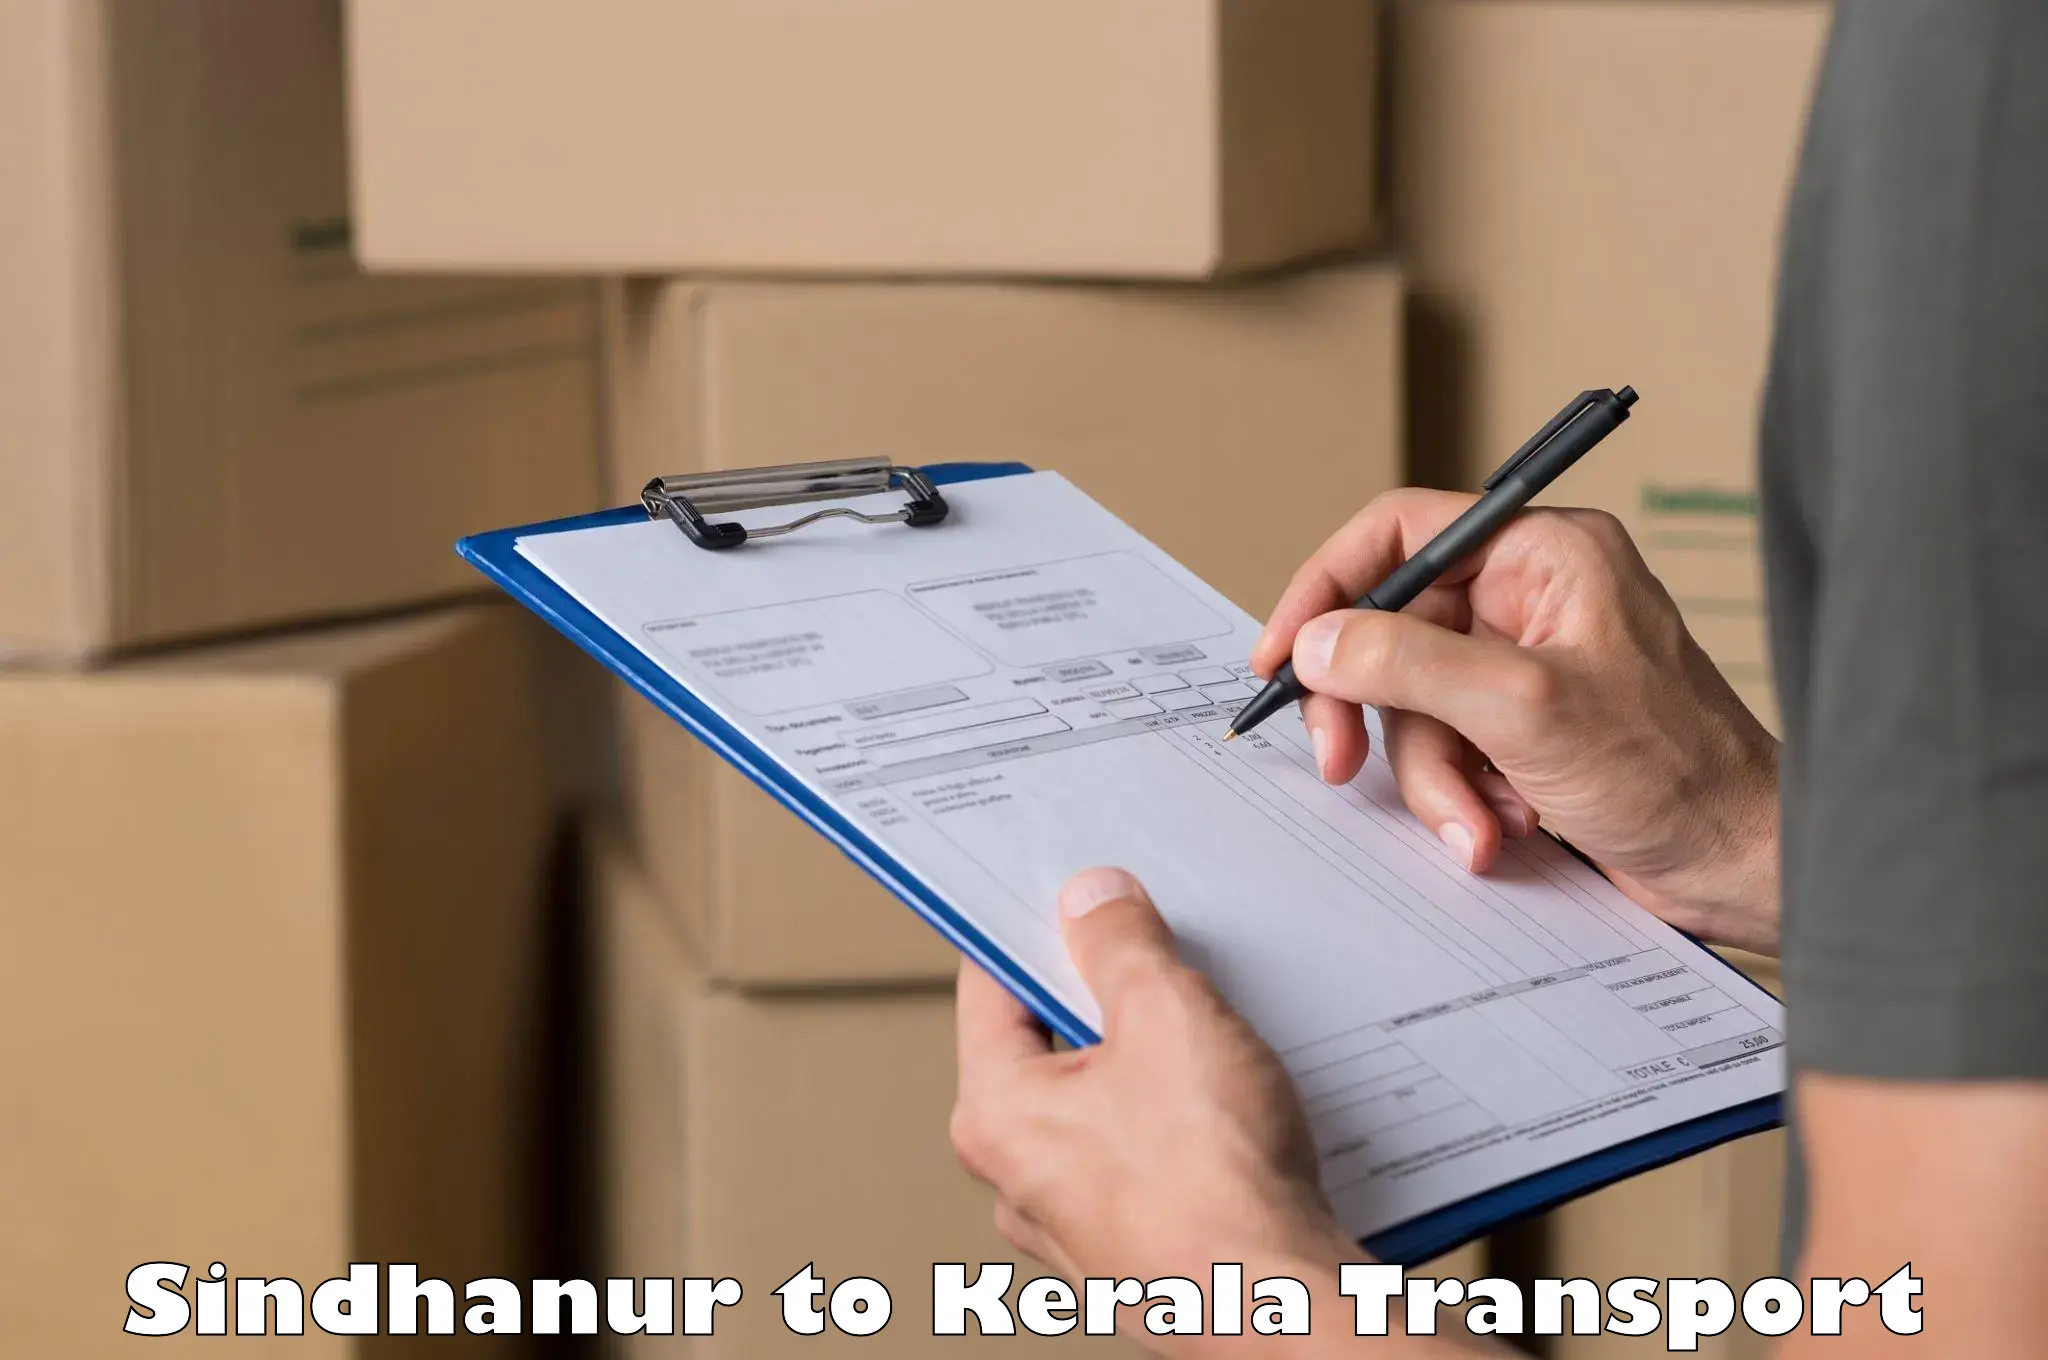 Online transport service Sindhanur to Kochi